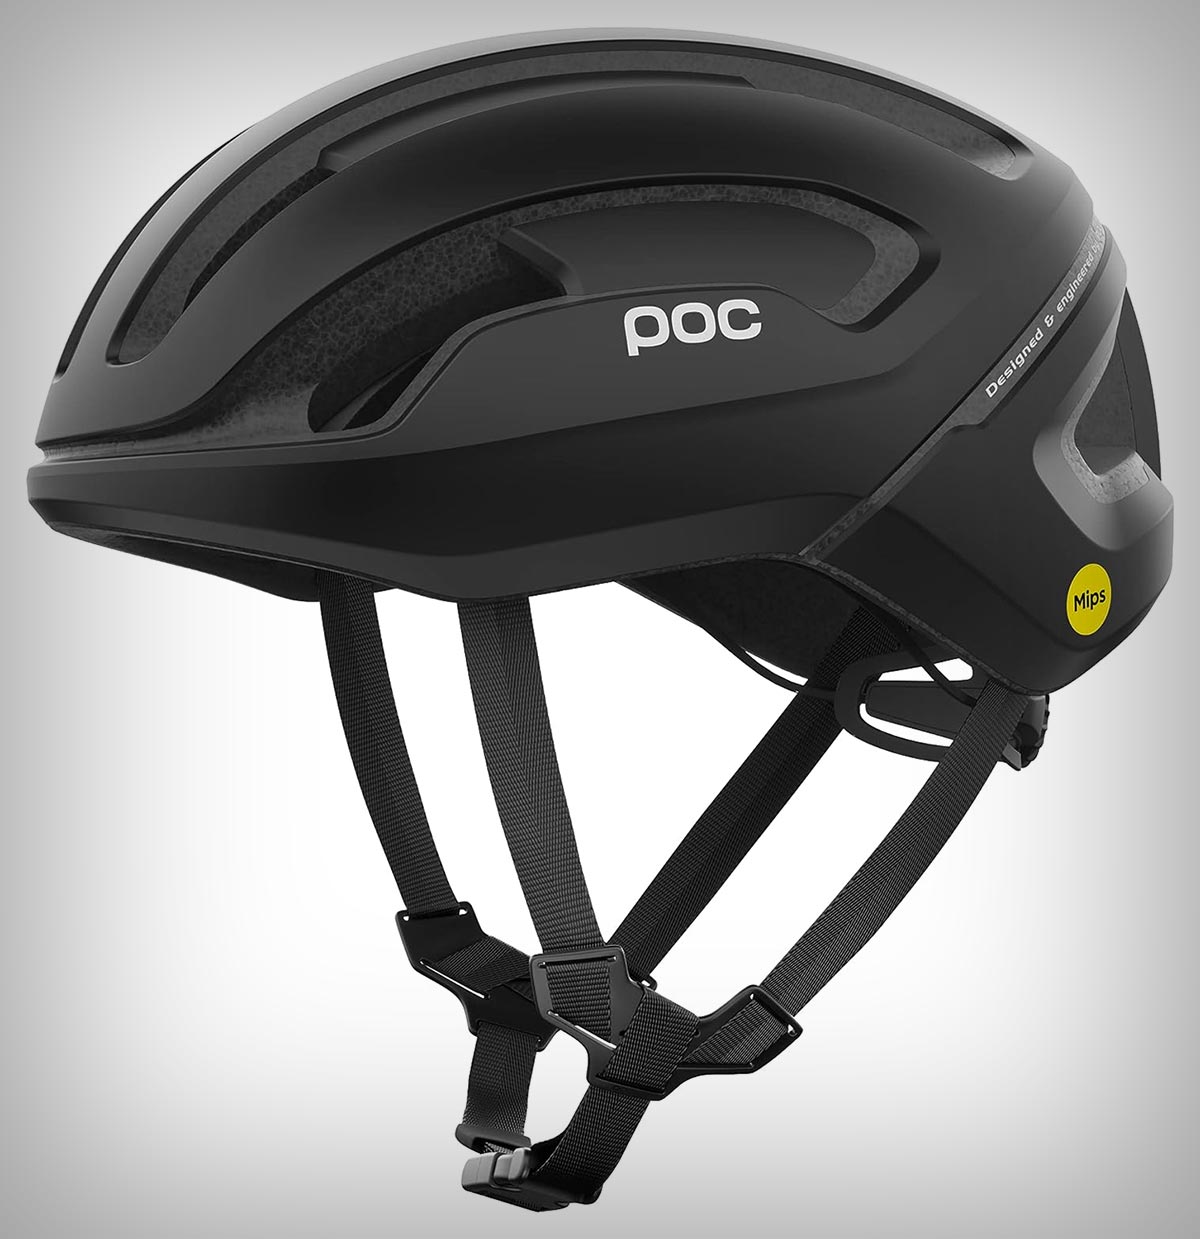 Cazando ofertas: el POC Omne Air MIPS, un casco polivalente para MTB y carretera, a mitad de precio en Amazon